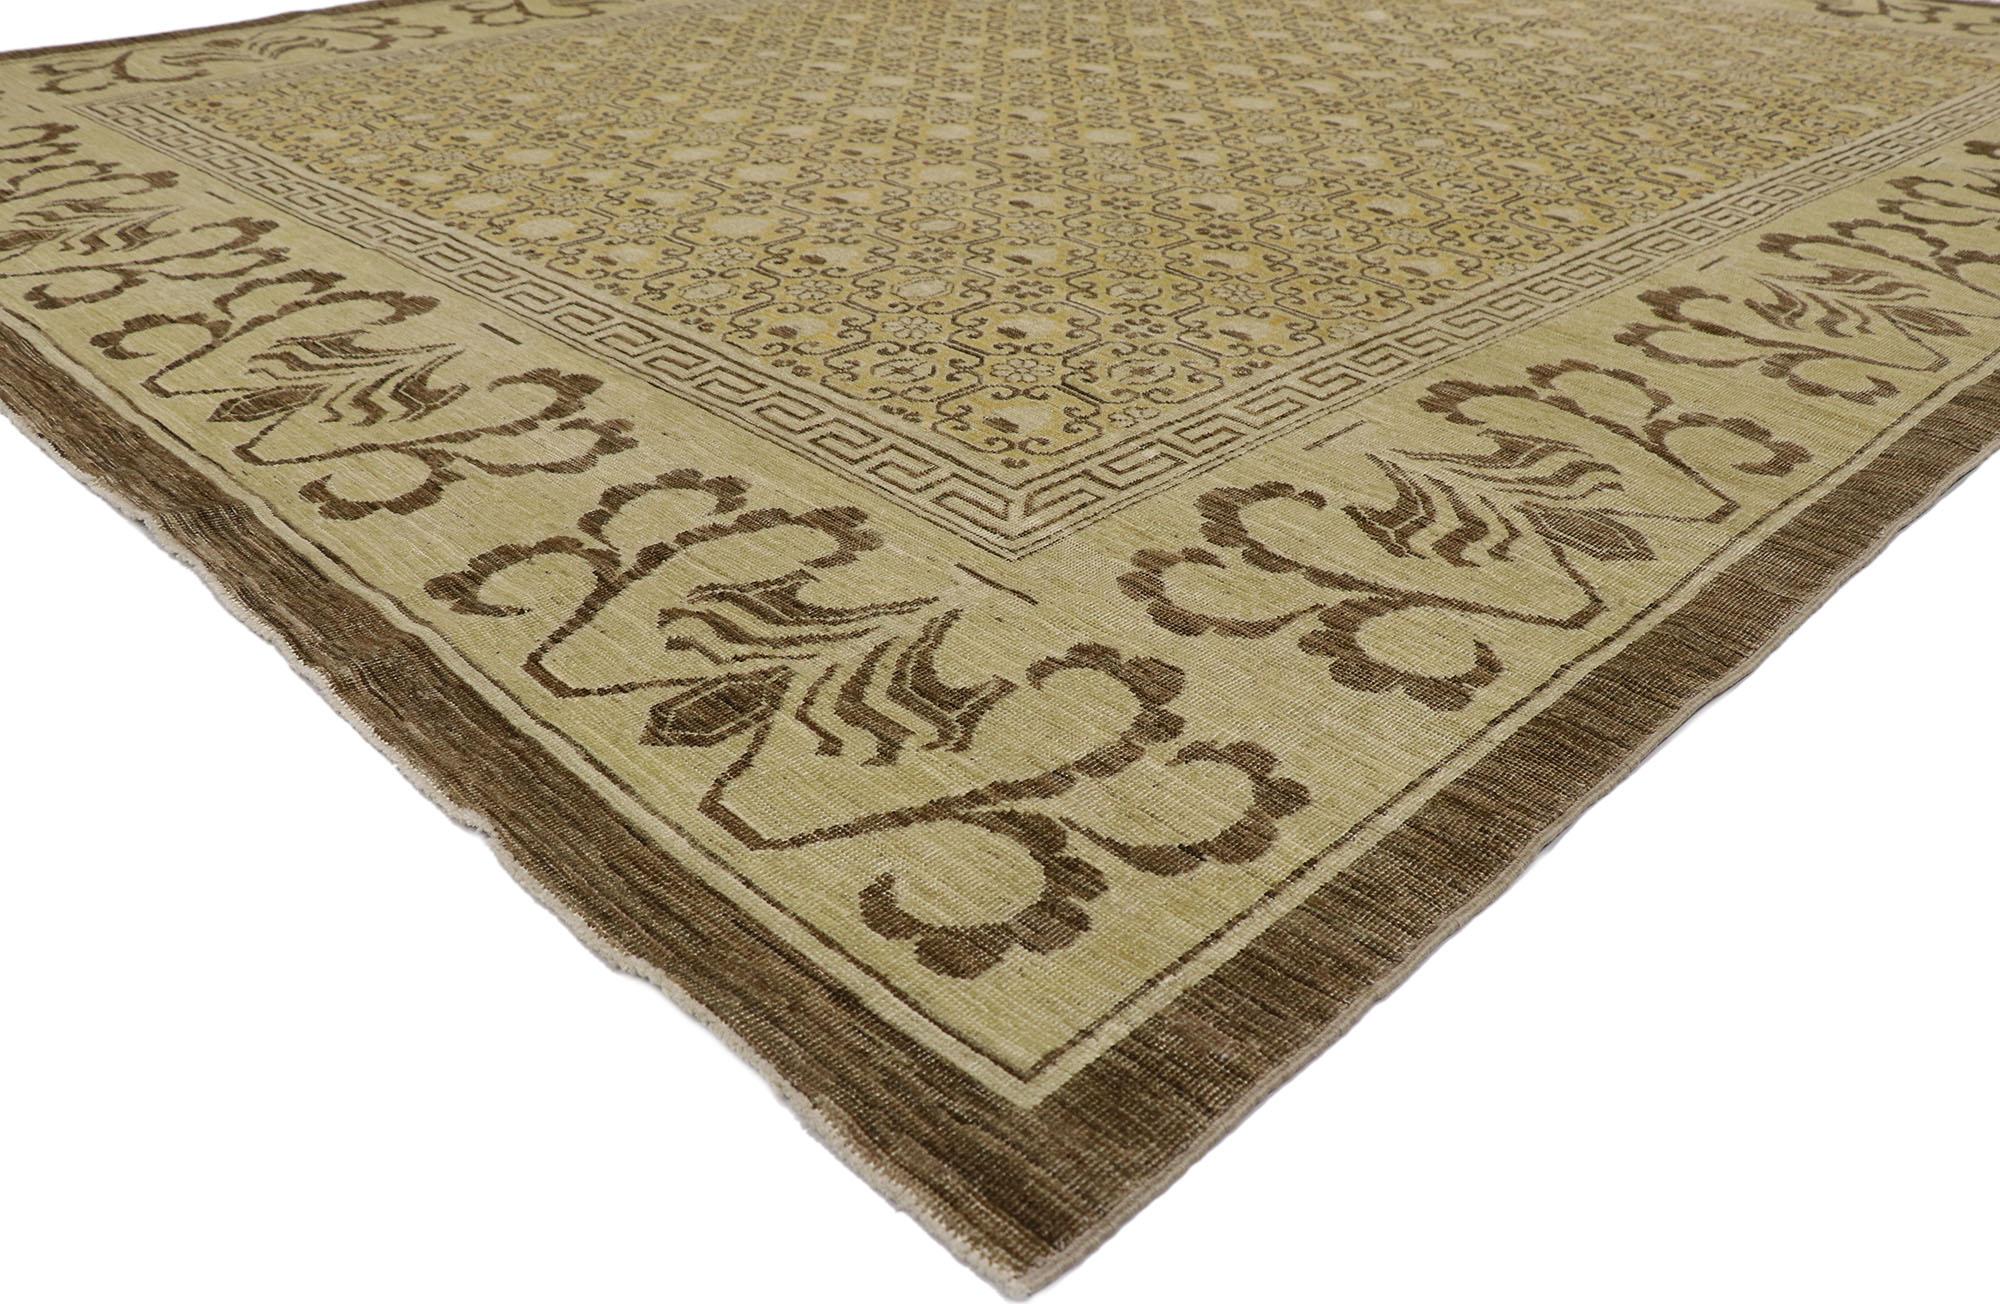 78154 Vintage-Khotan-Teppich im modernen, rustikalen Stil 09'04 x 11'11. Dieser handgeknüpfte Khotan-Teppich aus Wolle im Used-Look aus Pakistan besticht durch seine rustikale Sensibilität und verleiht ihm einen gepflegten, zeitlosen Look, der ein